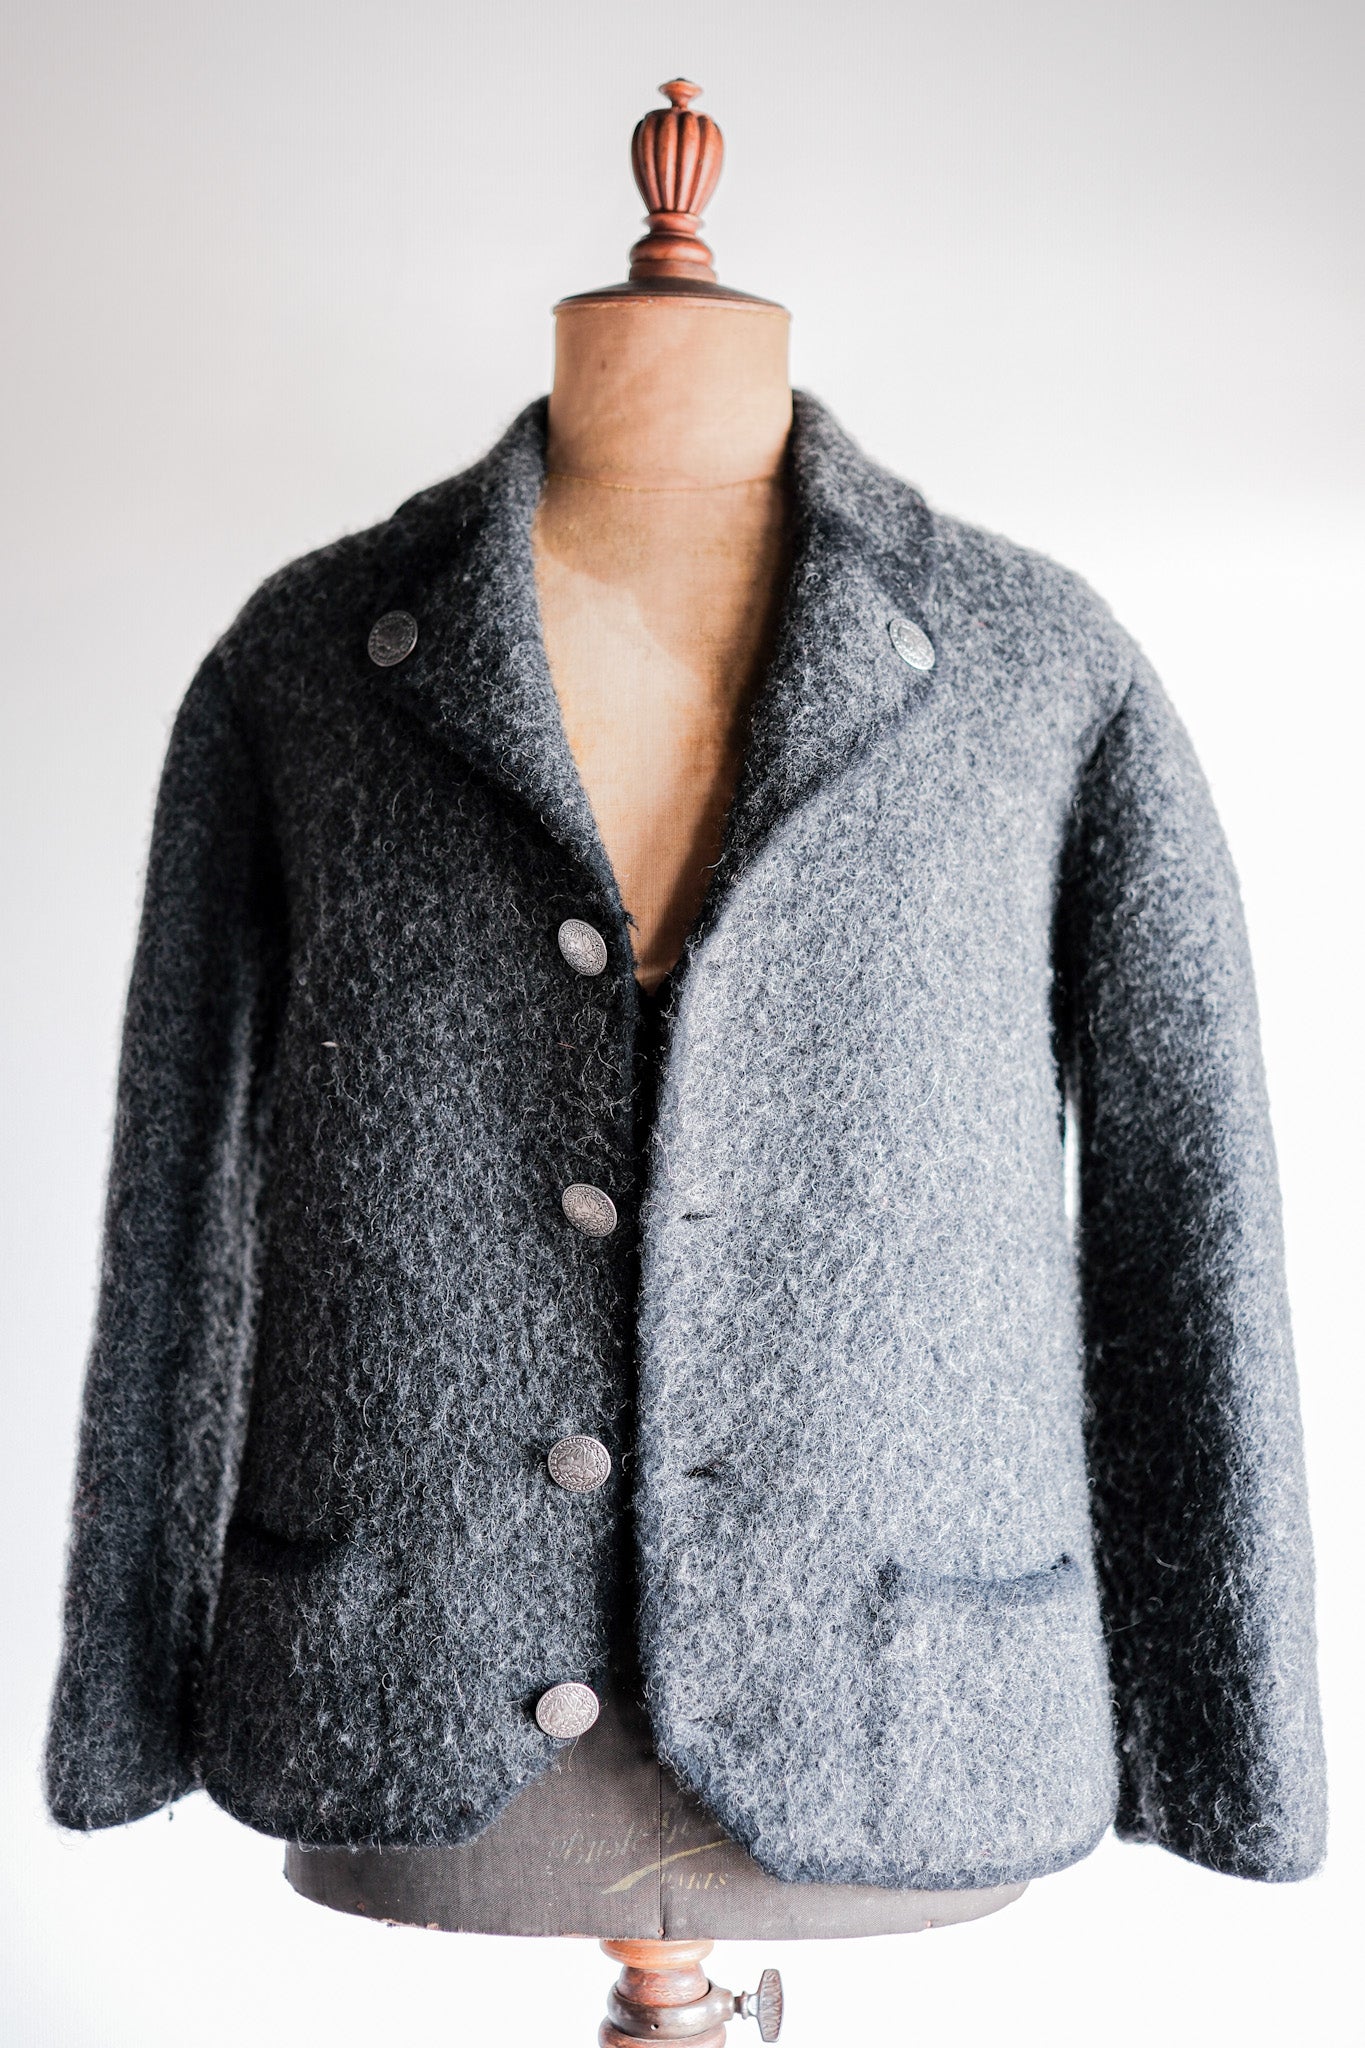 【~80's】HOFER Tyrolean Wool Jacket Size.44